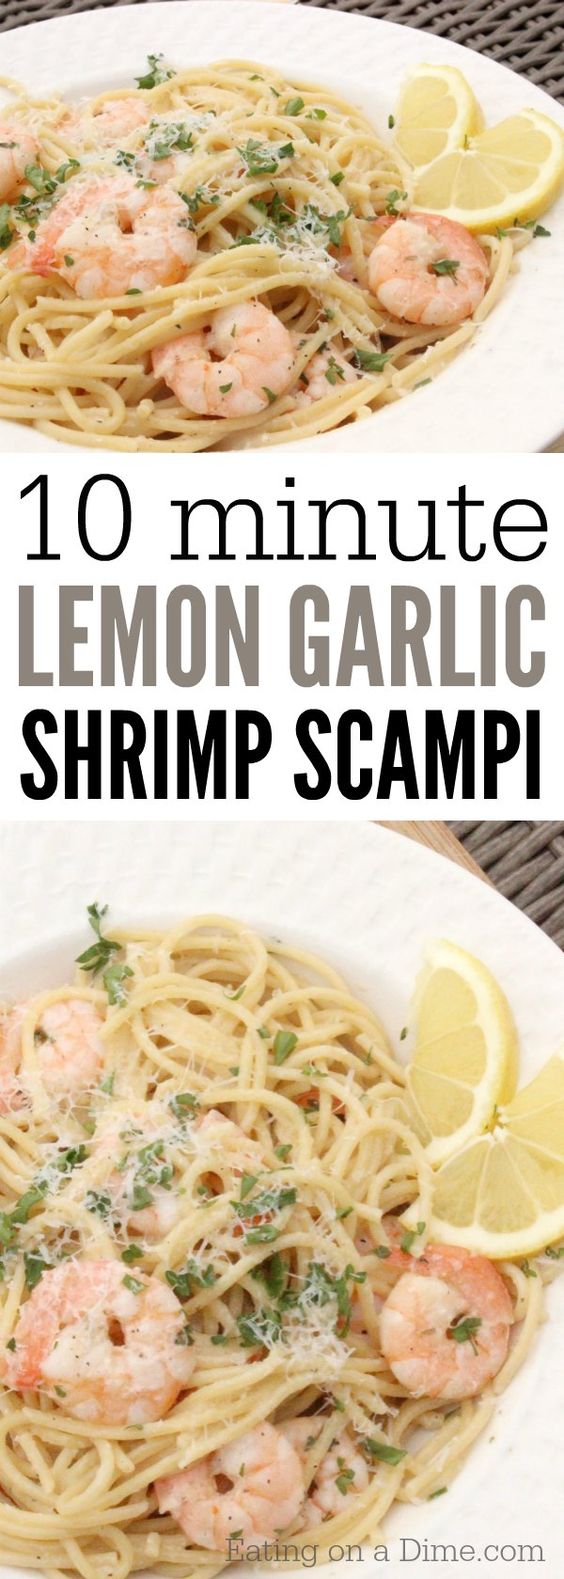 Food Recipes: Lemon Garlic Shrimp Scampi Recipe